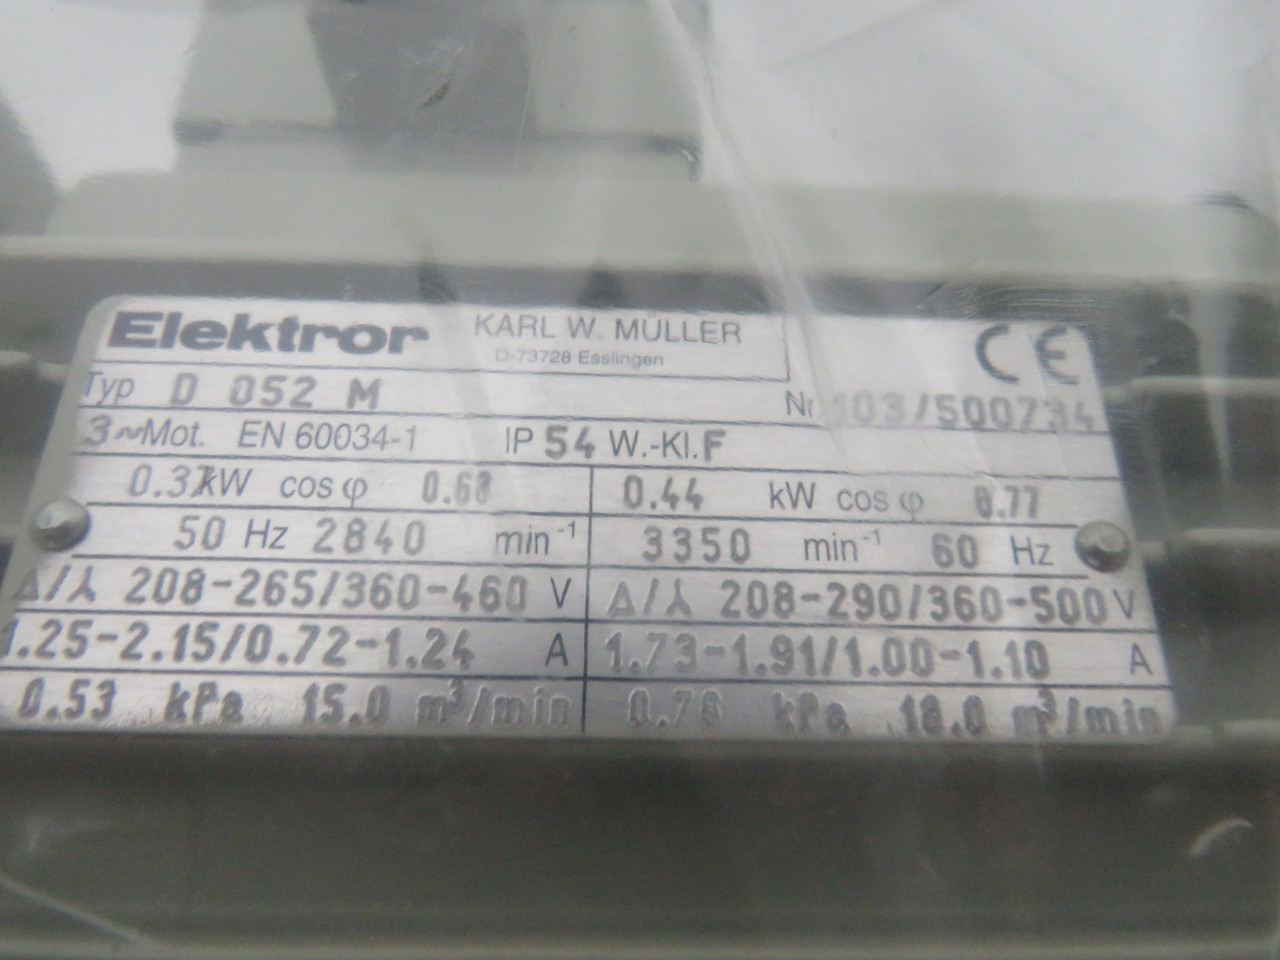 Elektror 0.44kW 3350RPM 208-290/360-500V 3Ph 1.73-1.91/1.00-1.10A 60Hz NOP